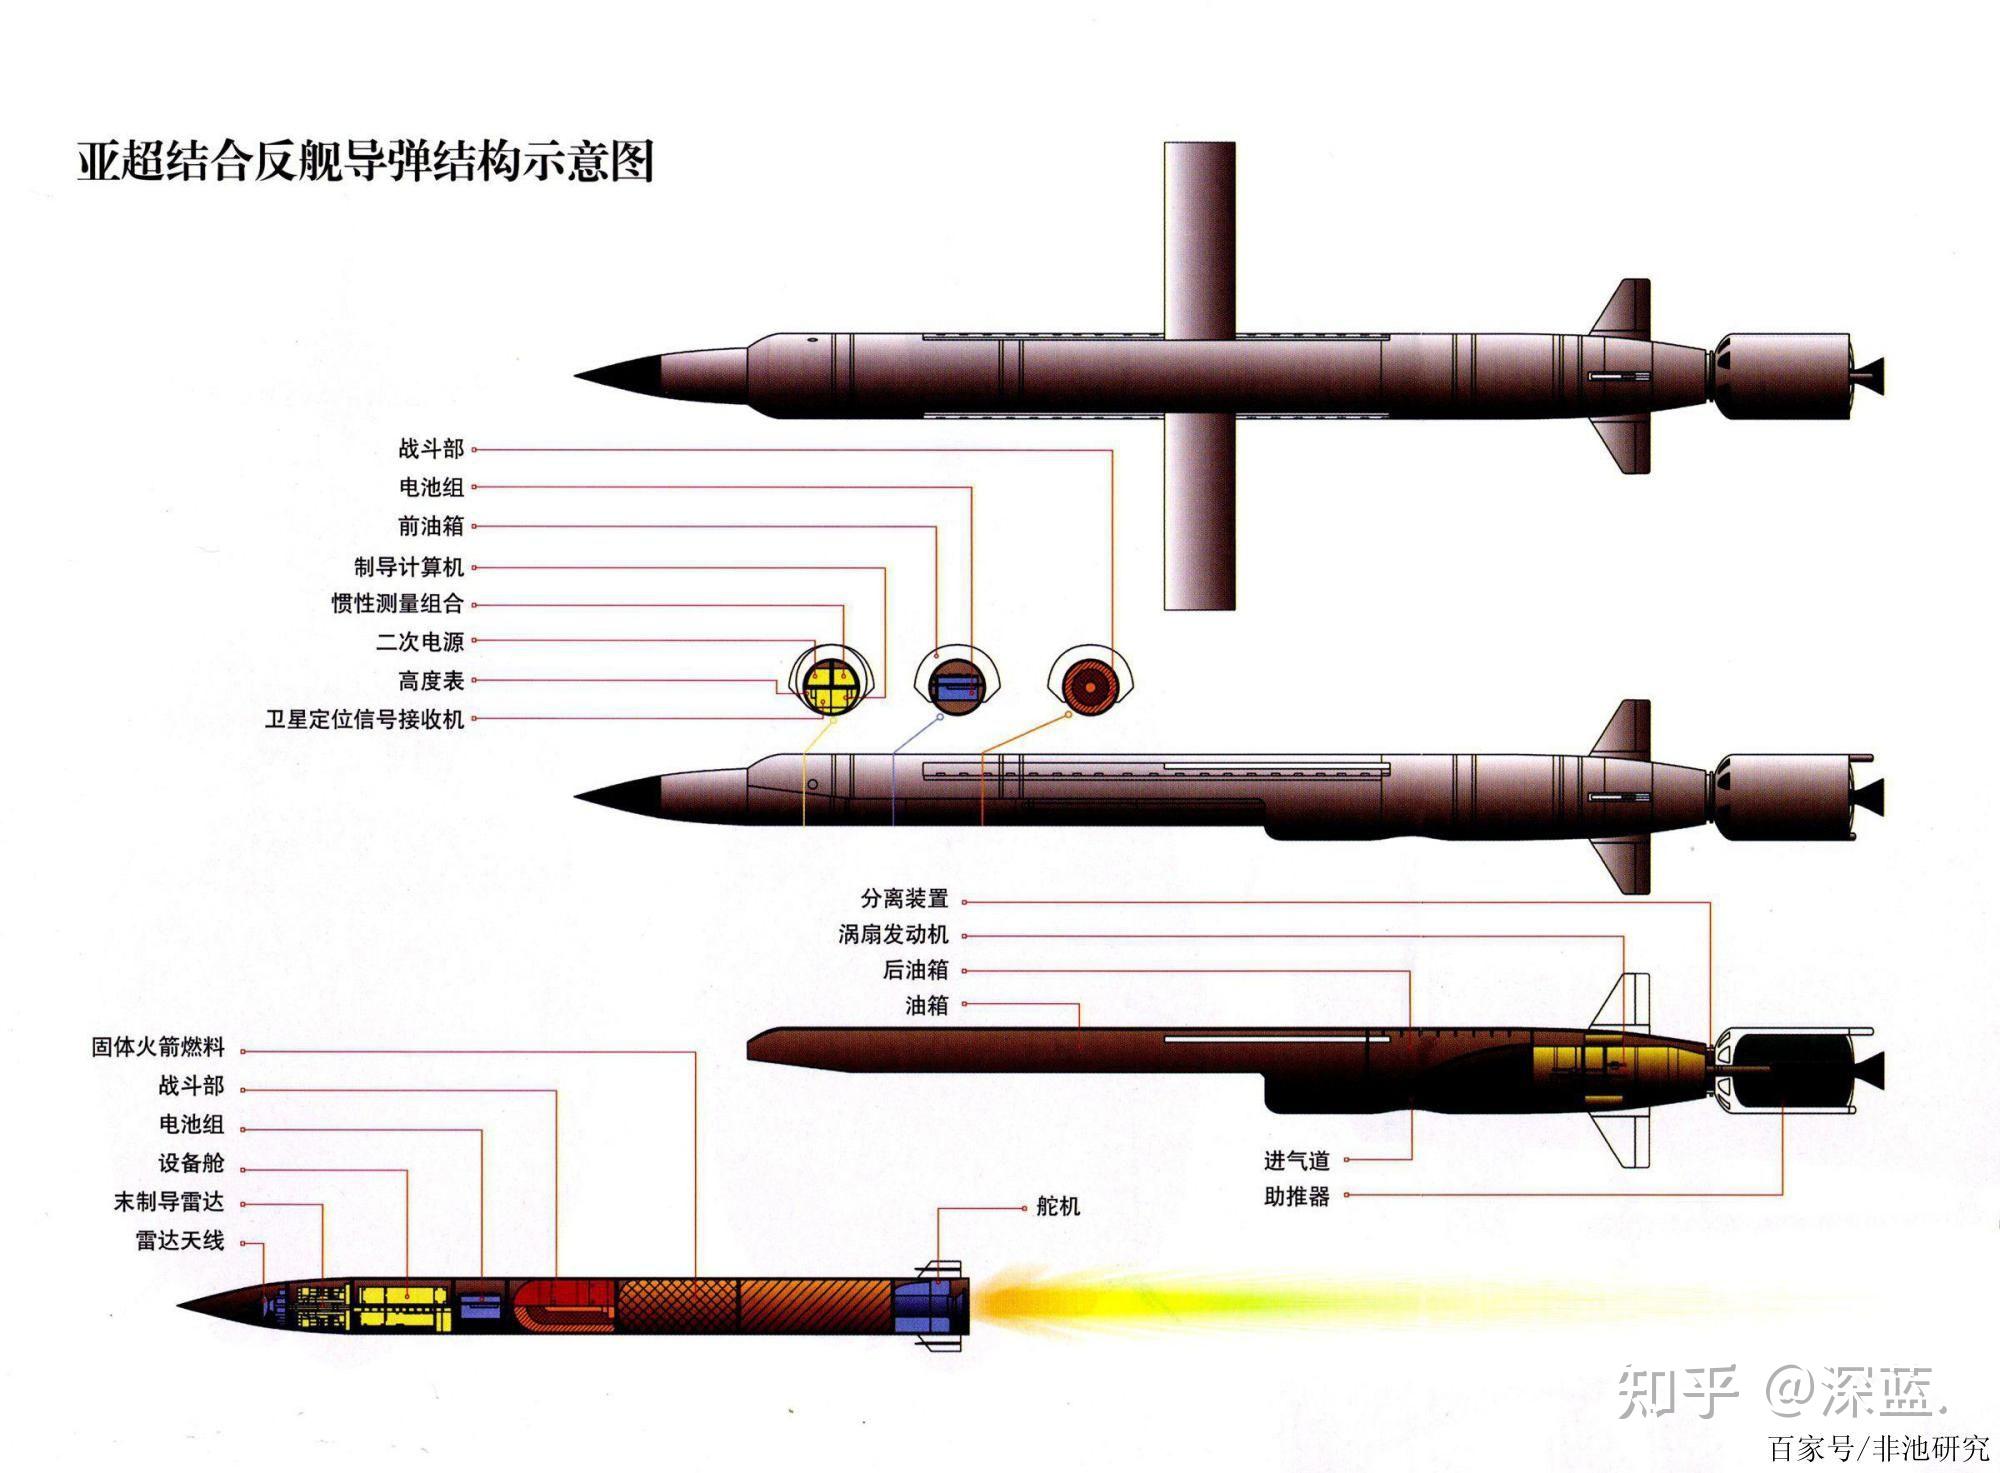 鹰击12和鹰击18的定位有什么区别,为什么要同时研制两款导弹?